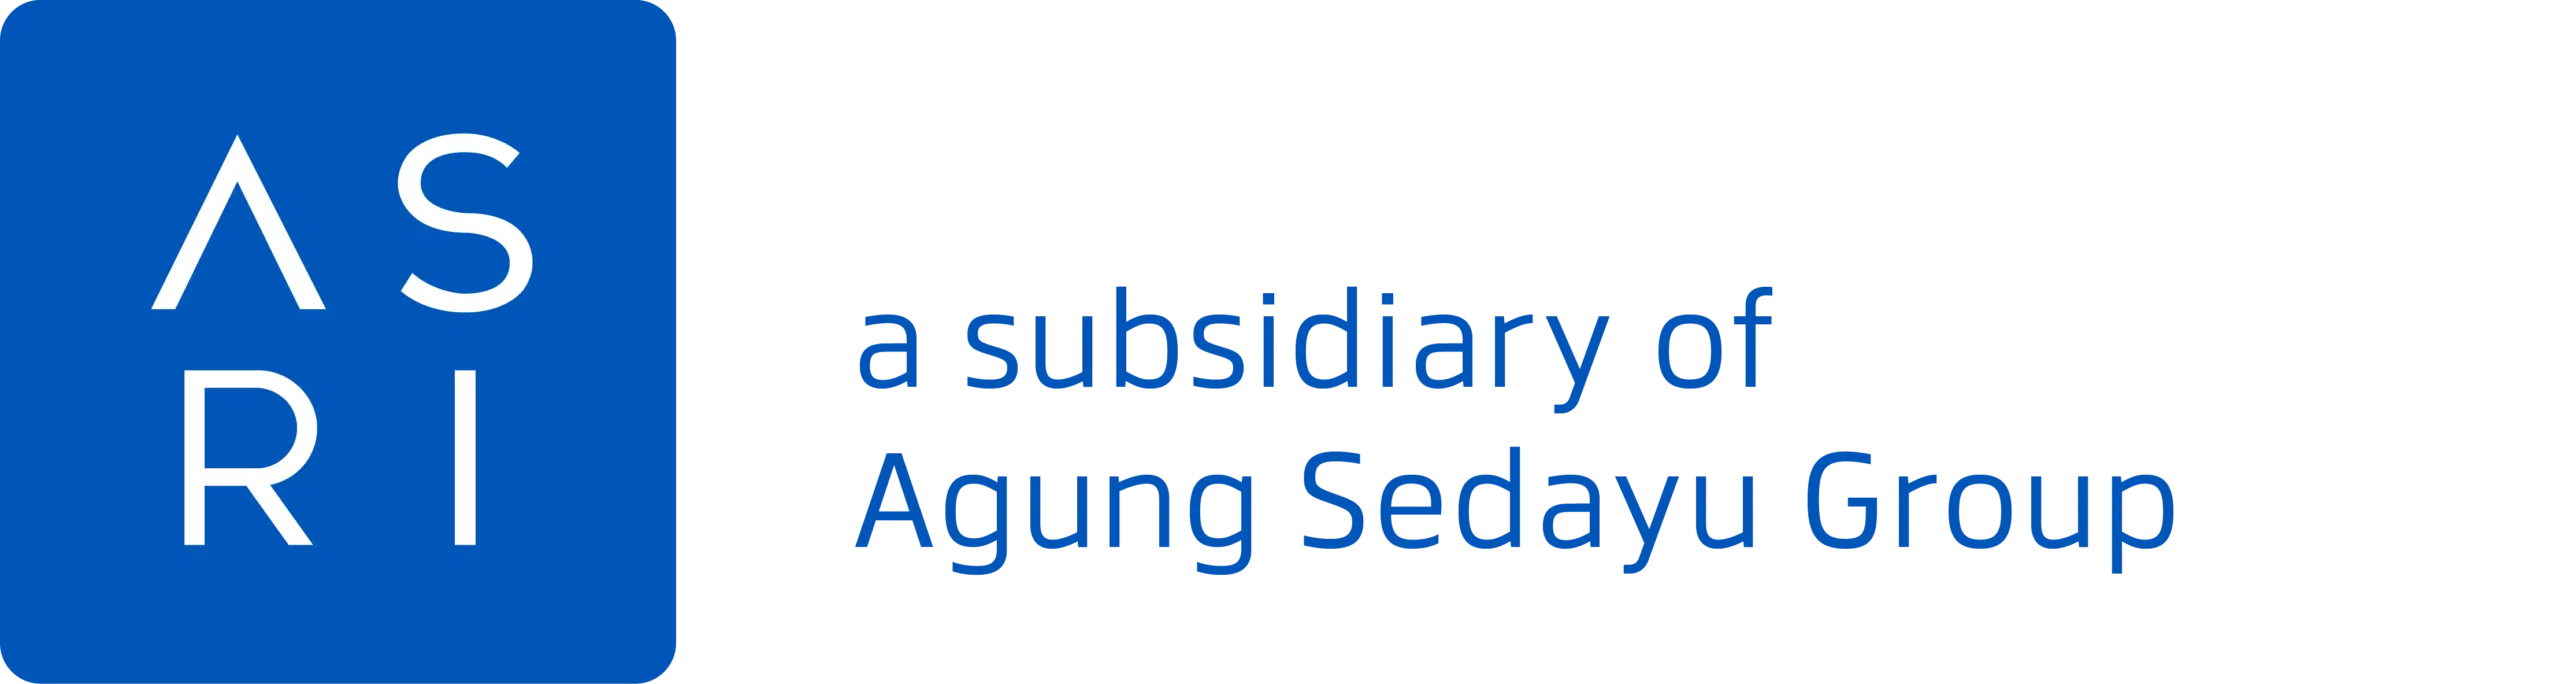 ASRI - a Subsidiary of Agung Sedayu Group